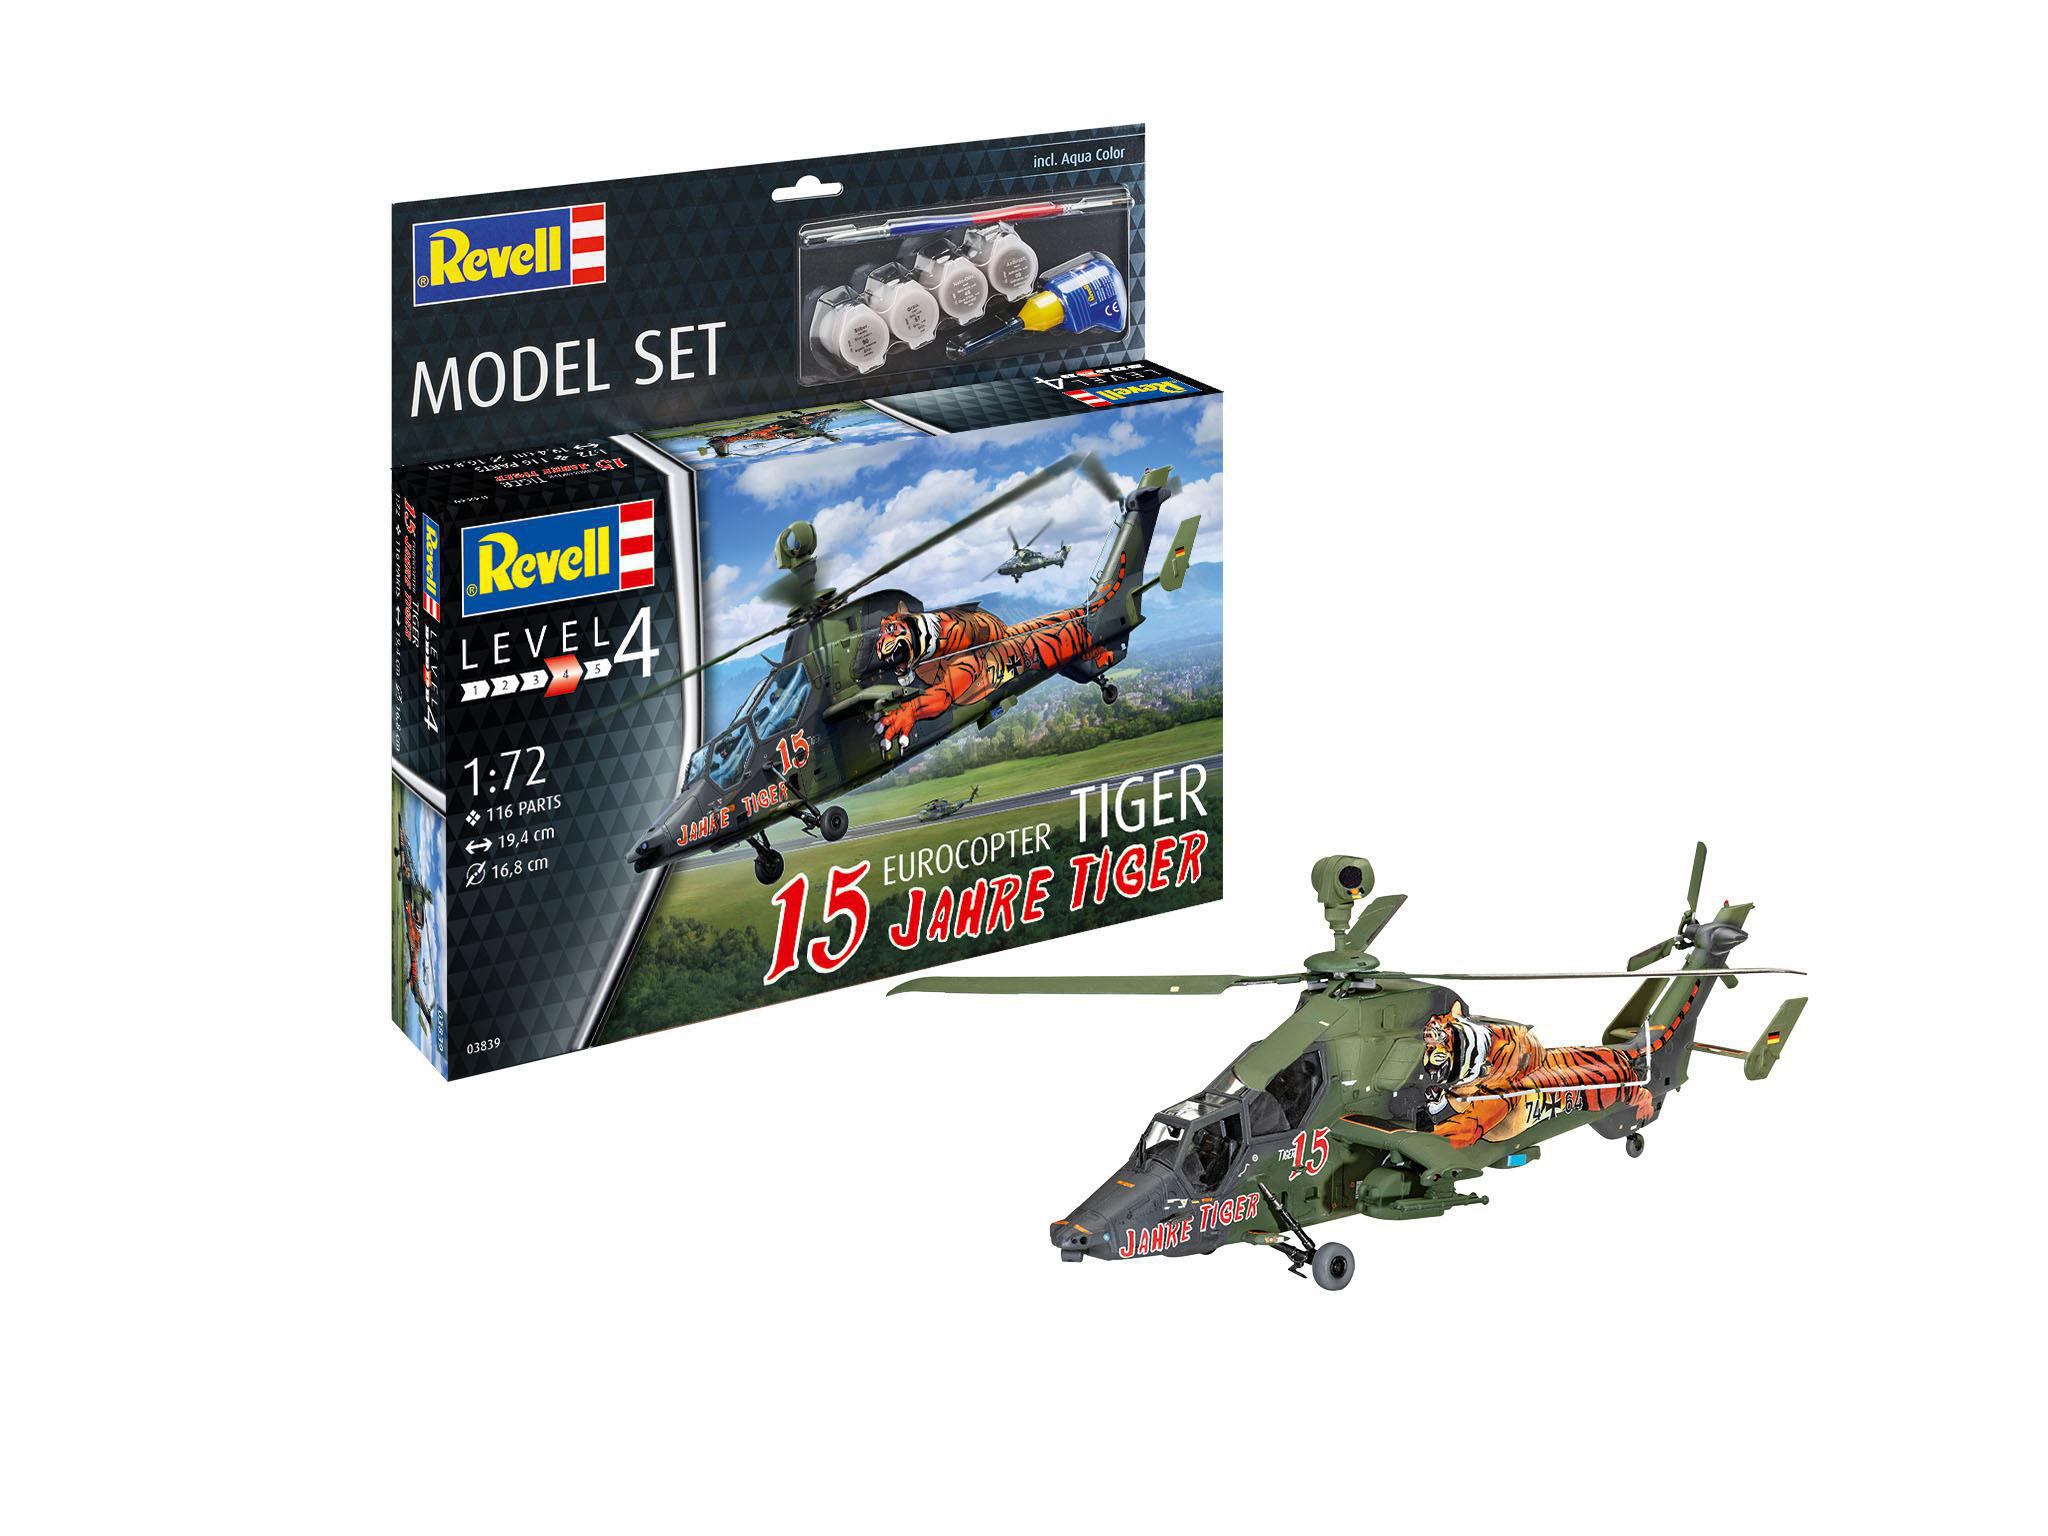 REVELL Model Set Tiger Eurocopter Mehrfarbig Jahre Tiger\